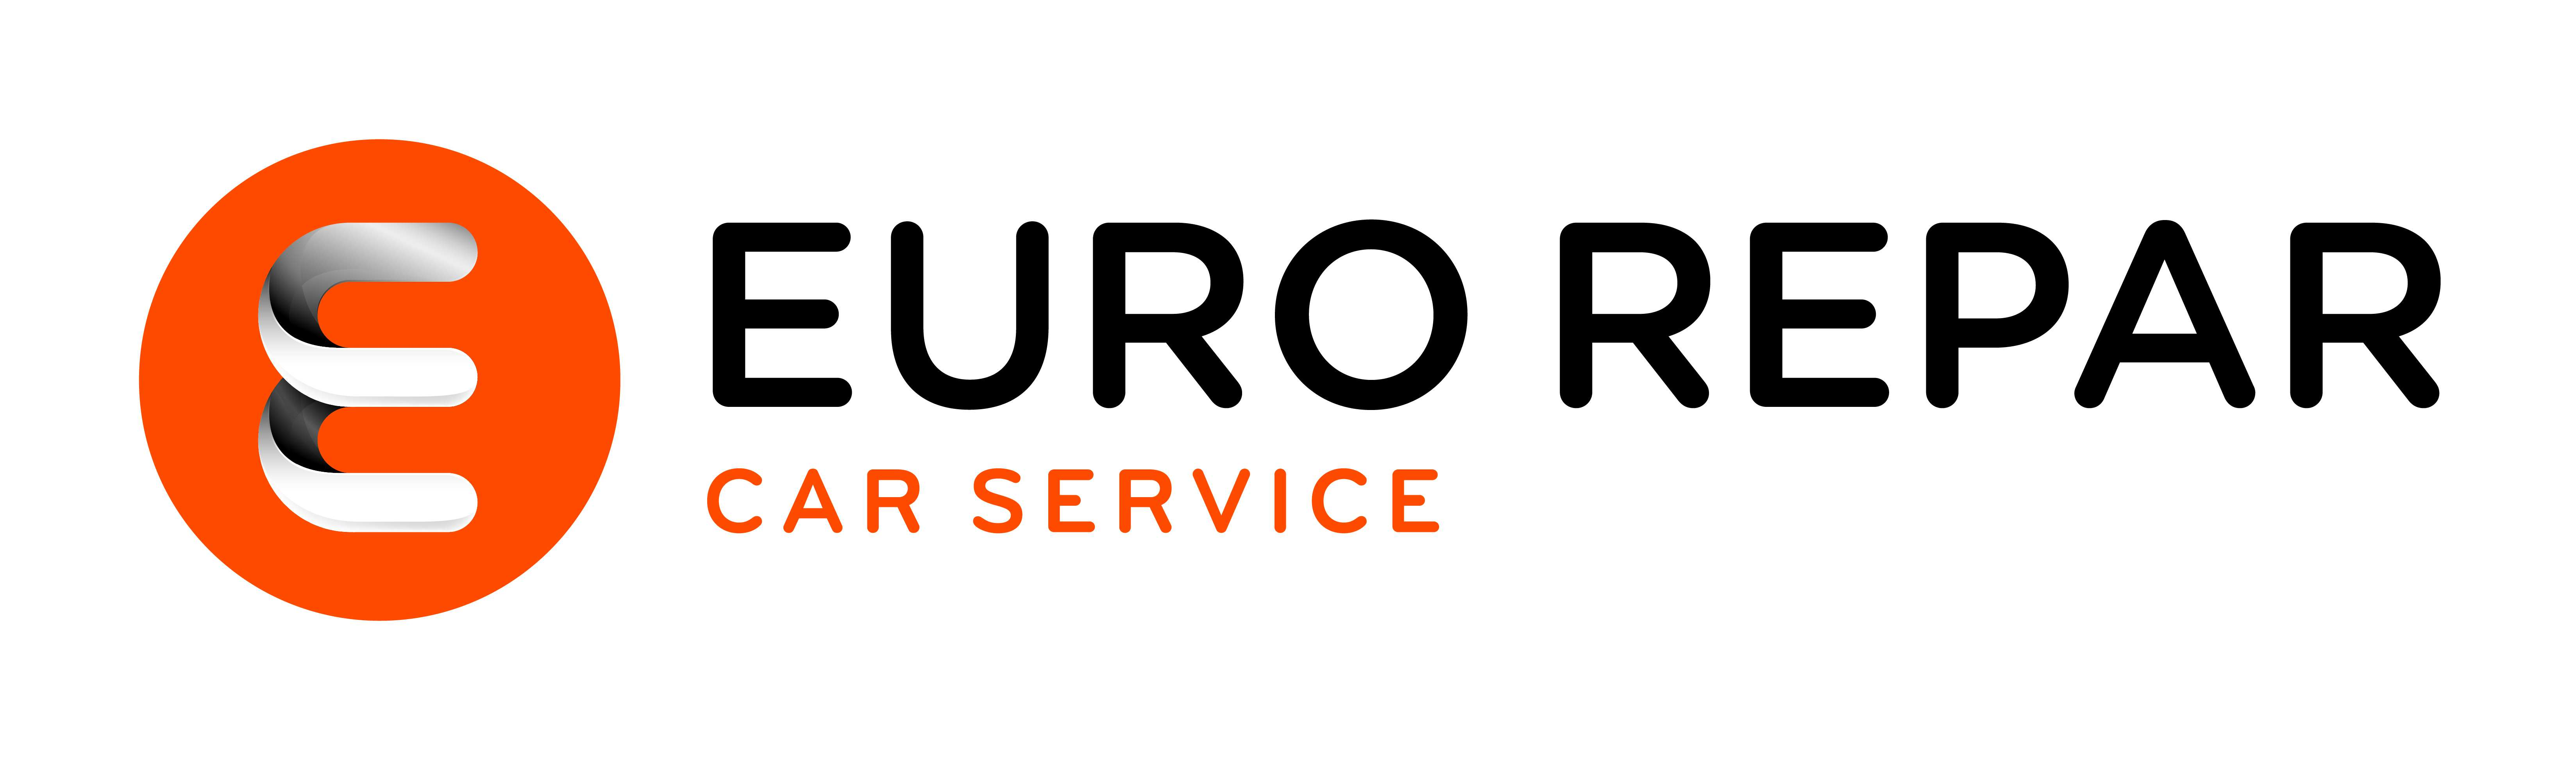 LA LETTRE DE MAI N 005 Paris, le 11 / 05 / 2015 Cher(e) adhérent(e), Le réseau «Euro Repar Car Service» se met en place progressivement.